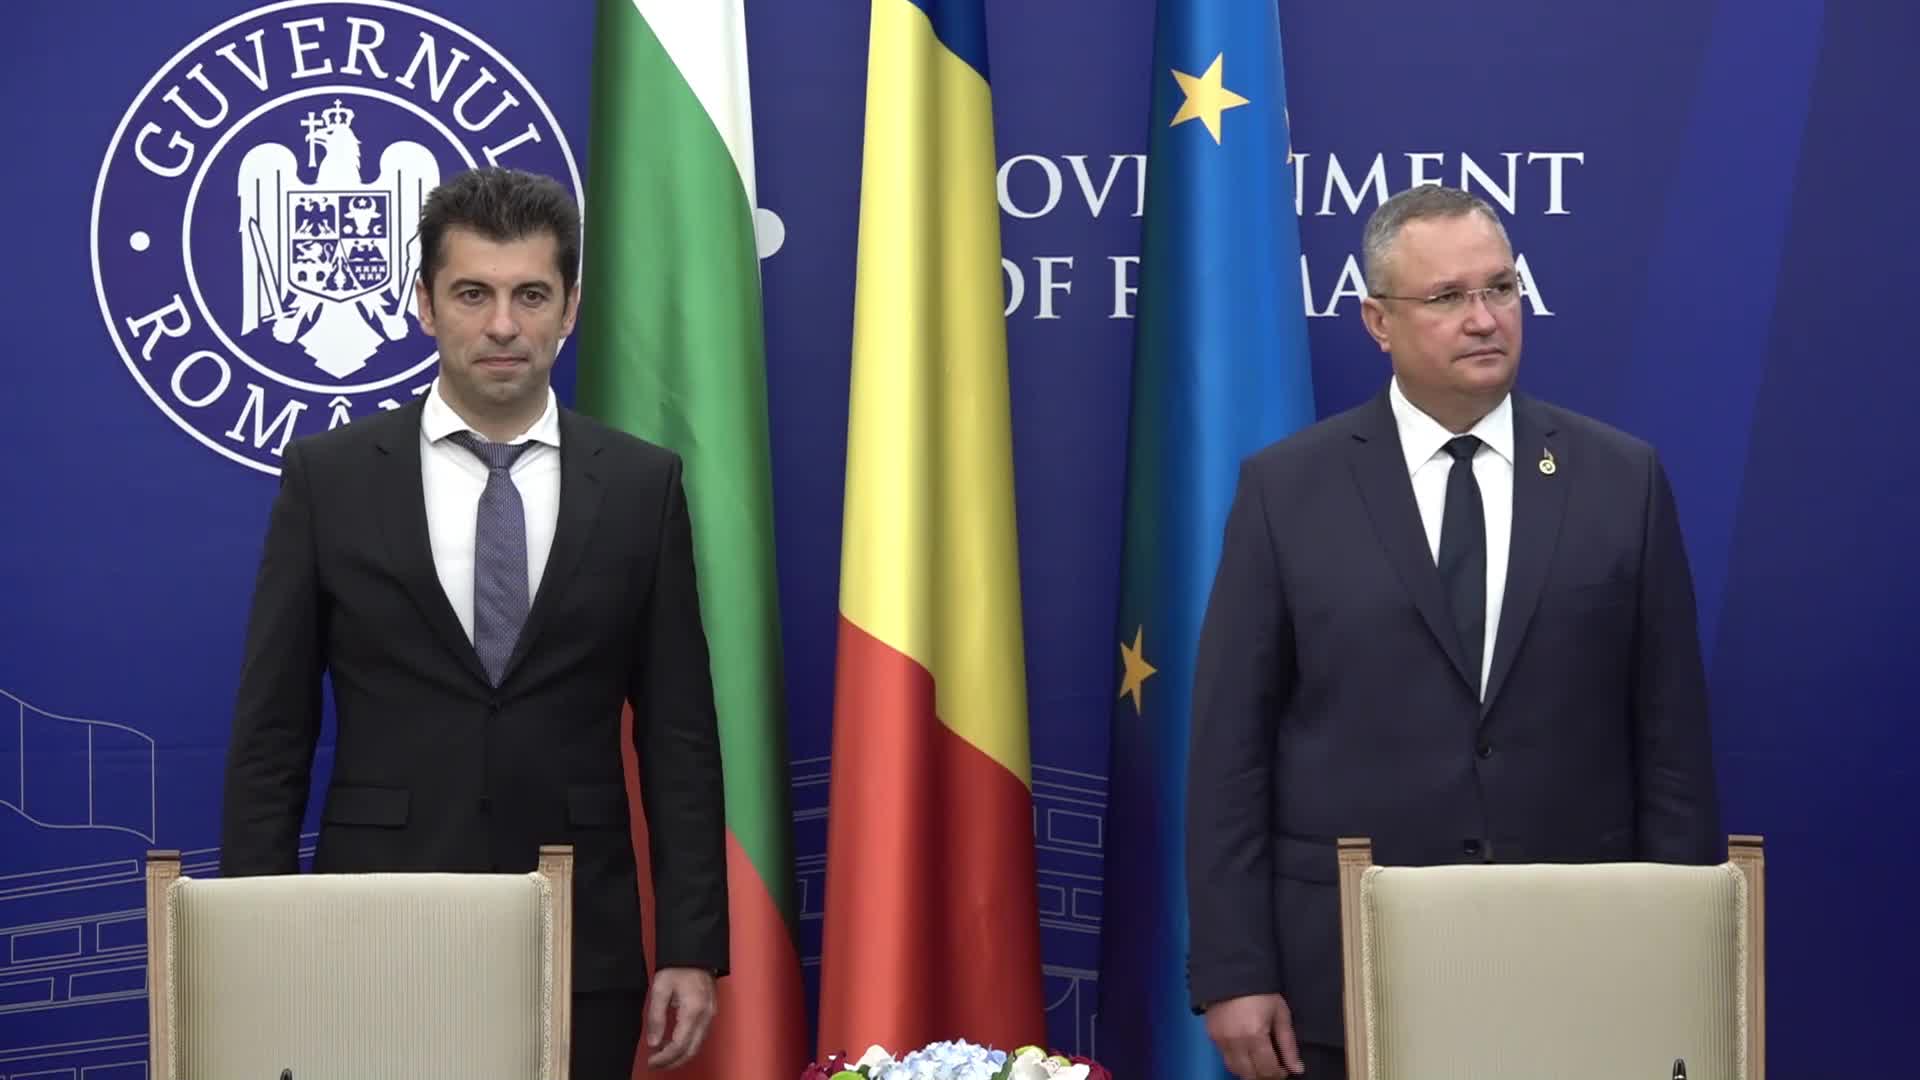 След Украйна: Премиерът Петков пристигна на посещение в Букурещ